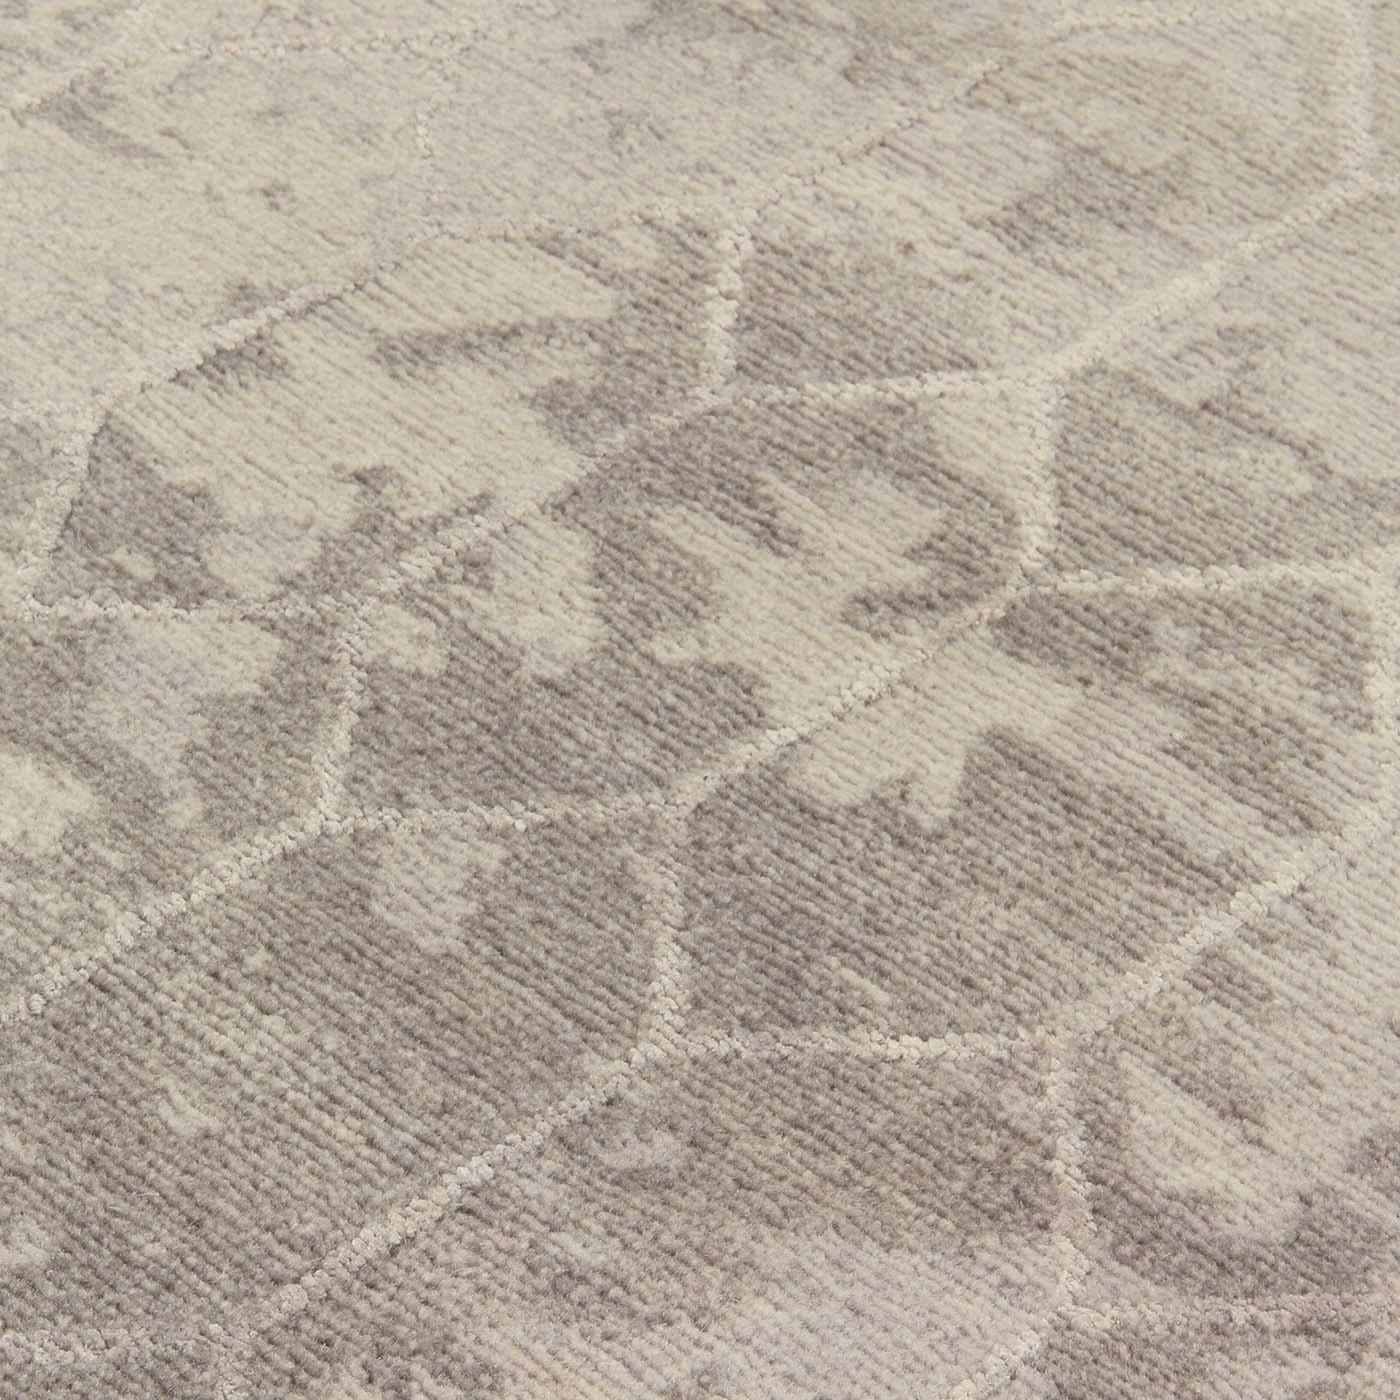 Gio Ponti conçoit un impressionnant ajourage sous la forme d'une voile perforée qui orne la façade de la cathédrale de la Grande Mère de Dieu dans la ville de Tarente, en Italie. Ce tapis unique (300 x 250 cm) est fabriqué en laine tibétaine et en